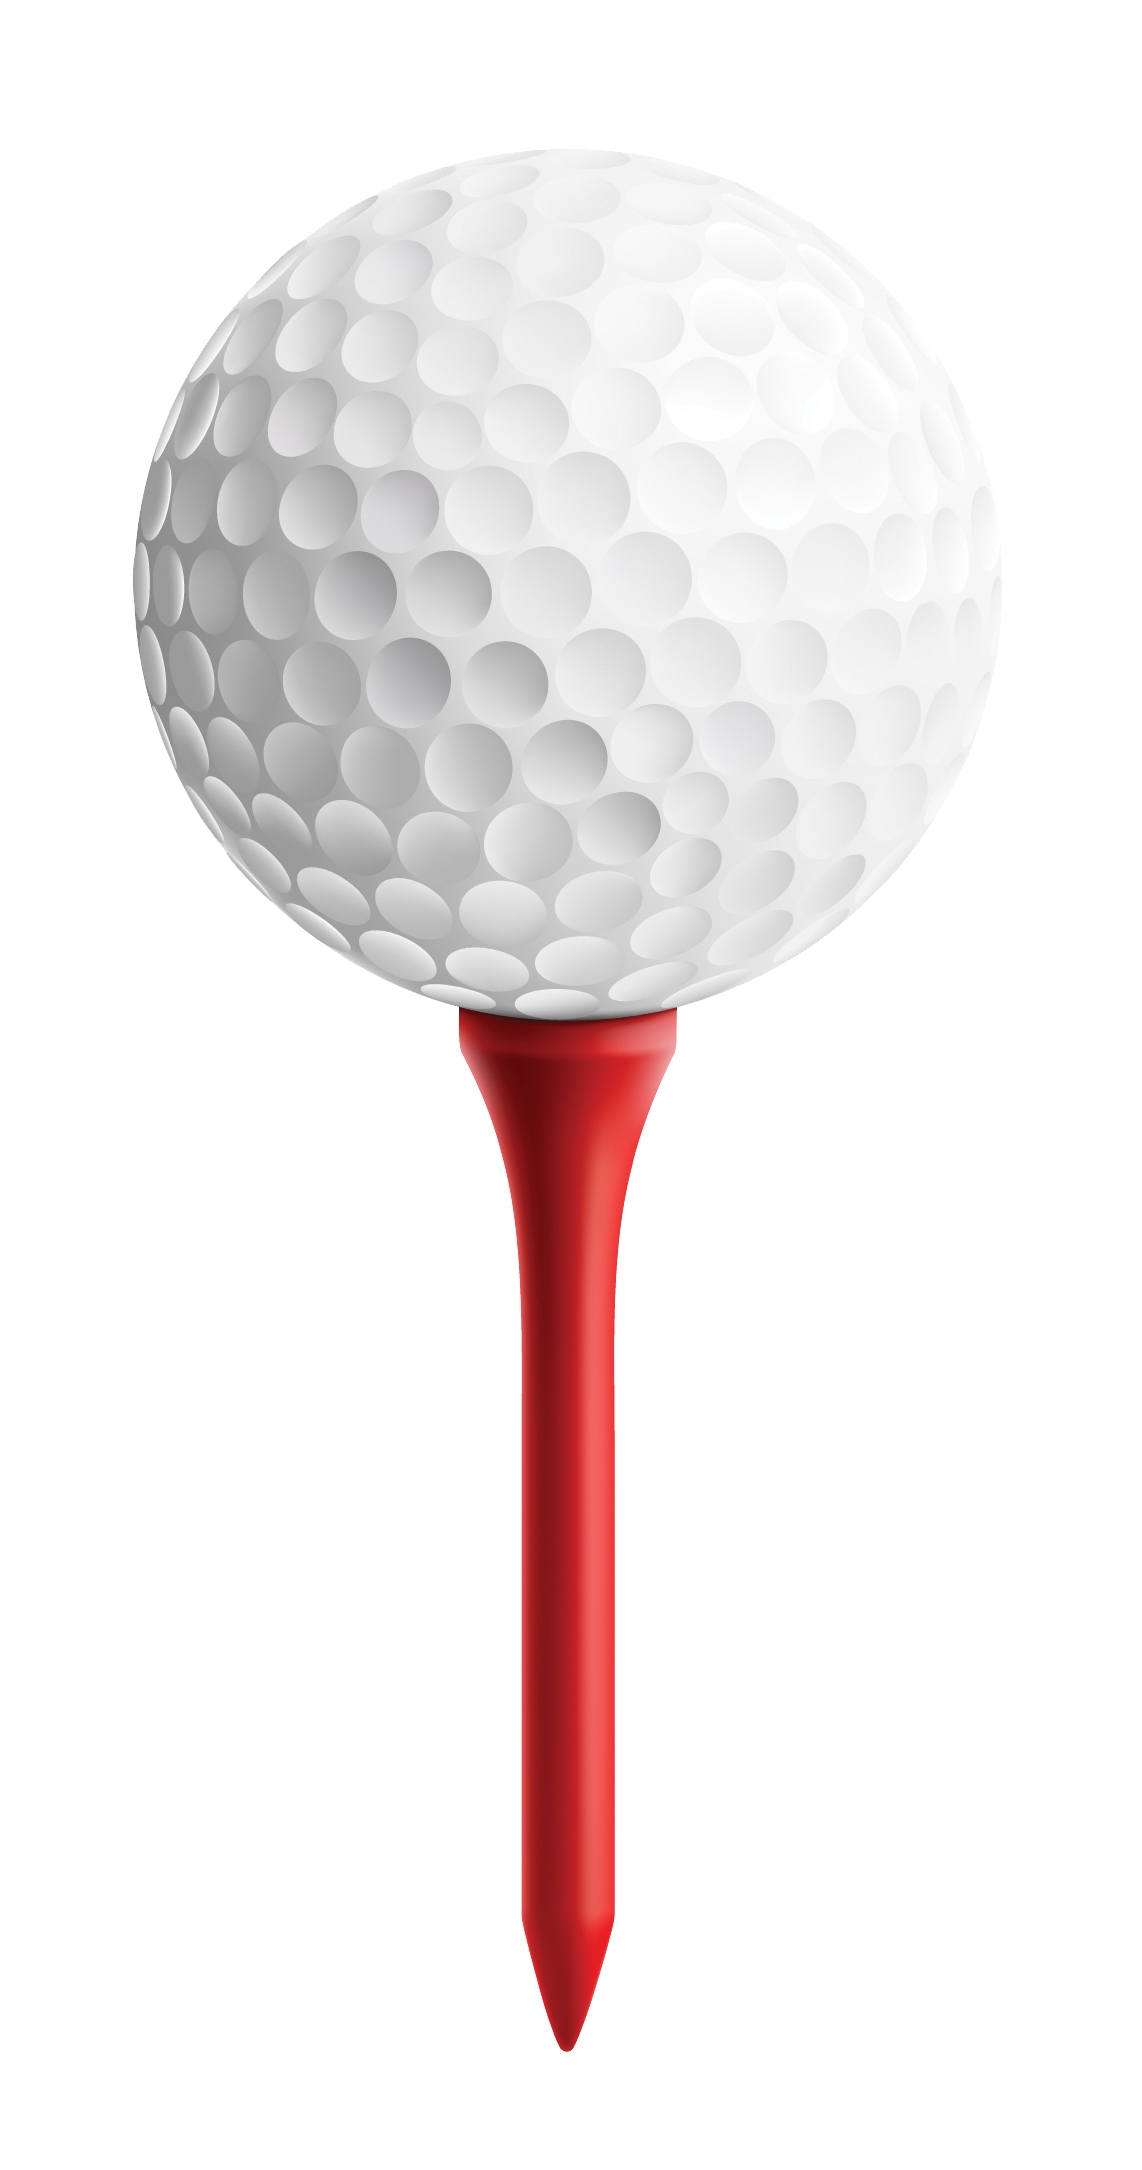 golfing clipart golf ball tee